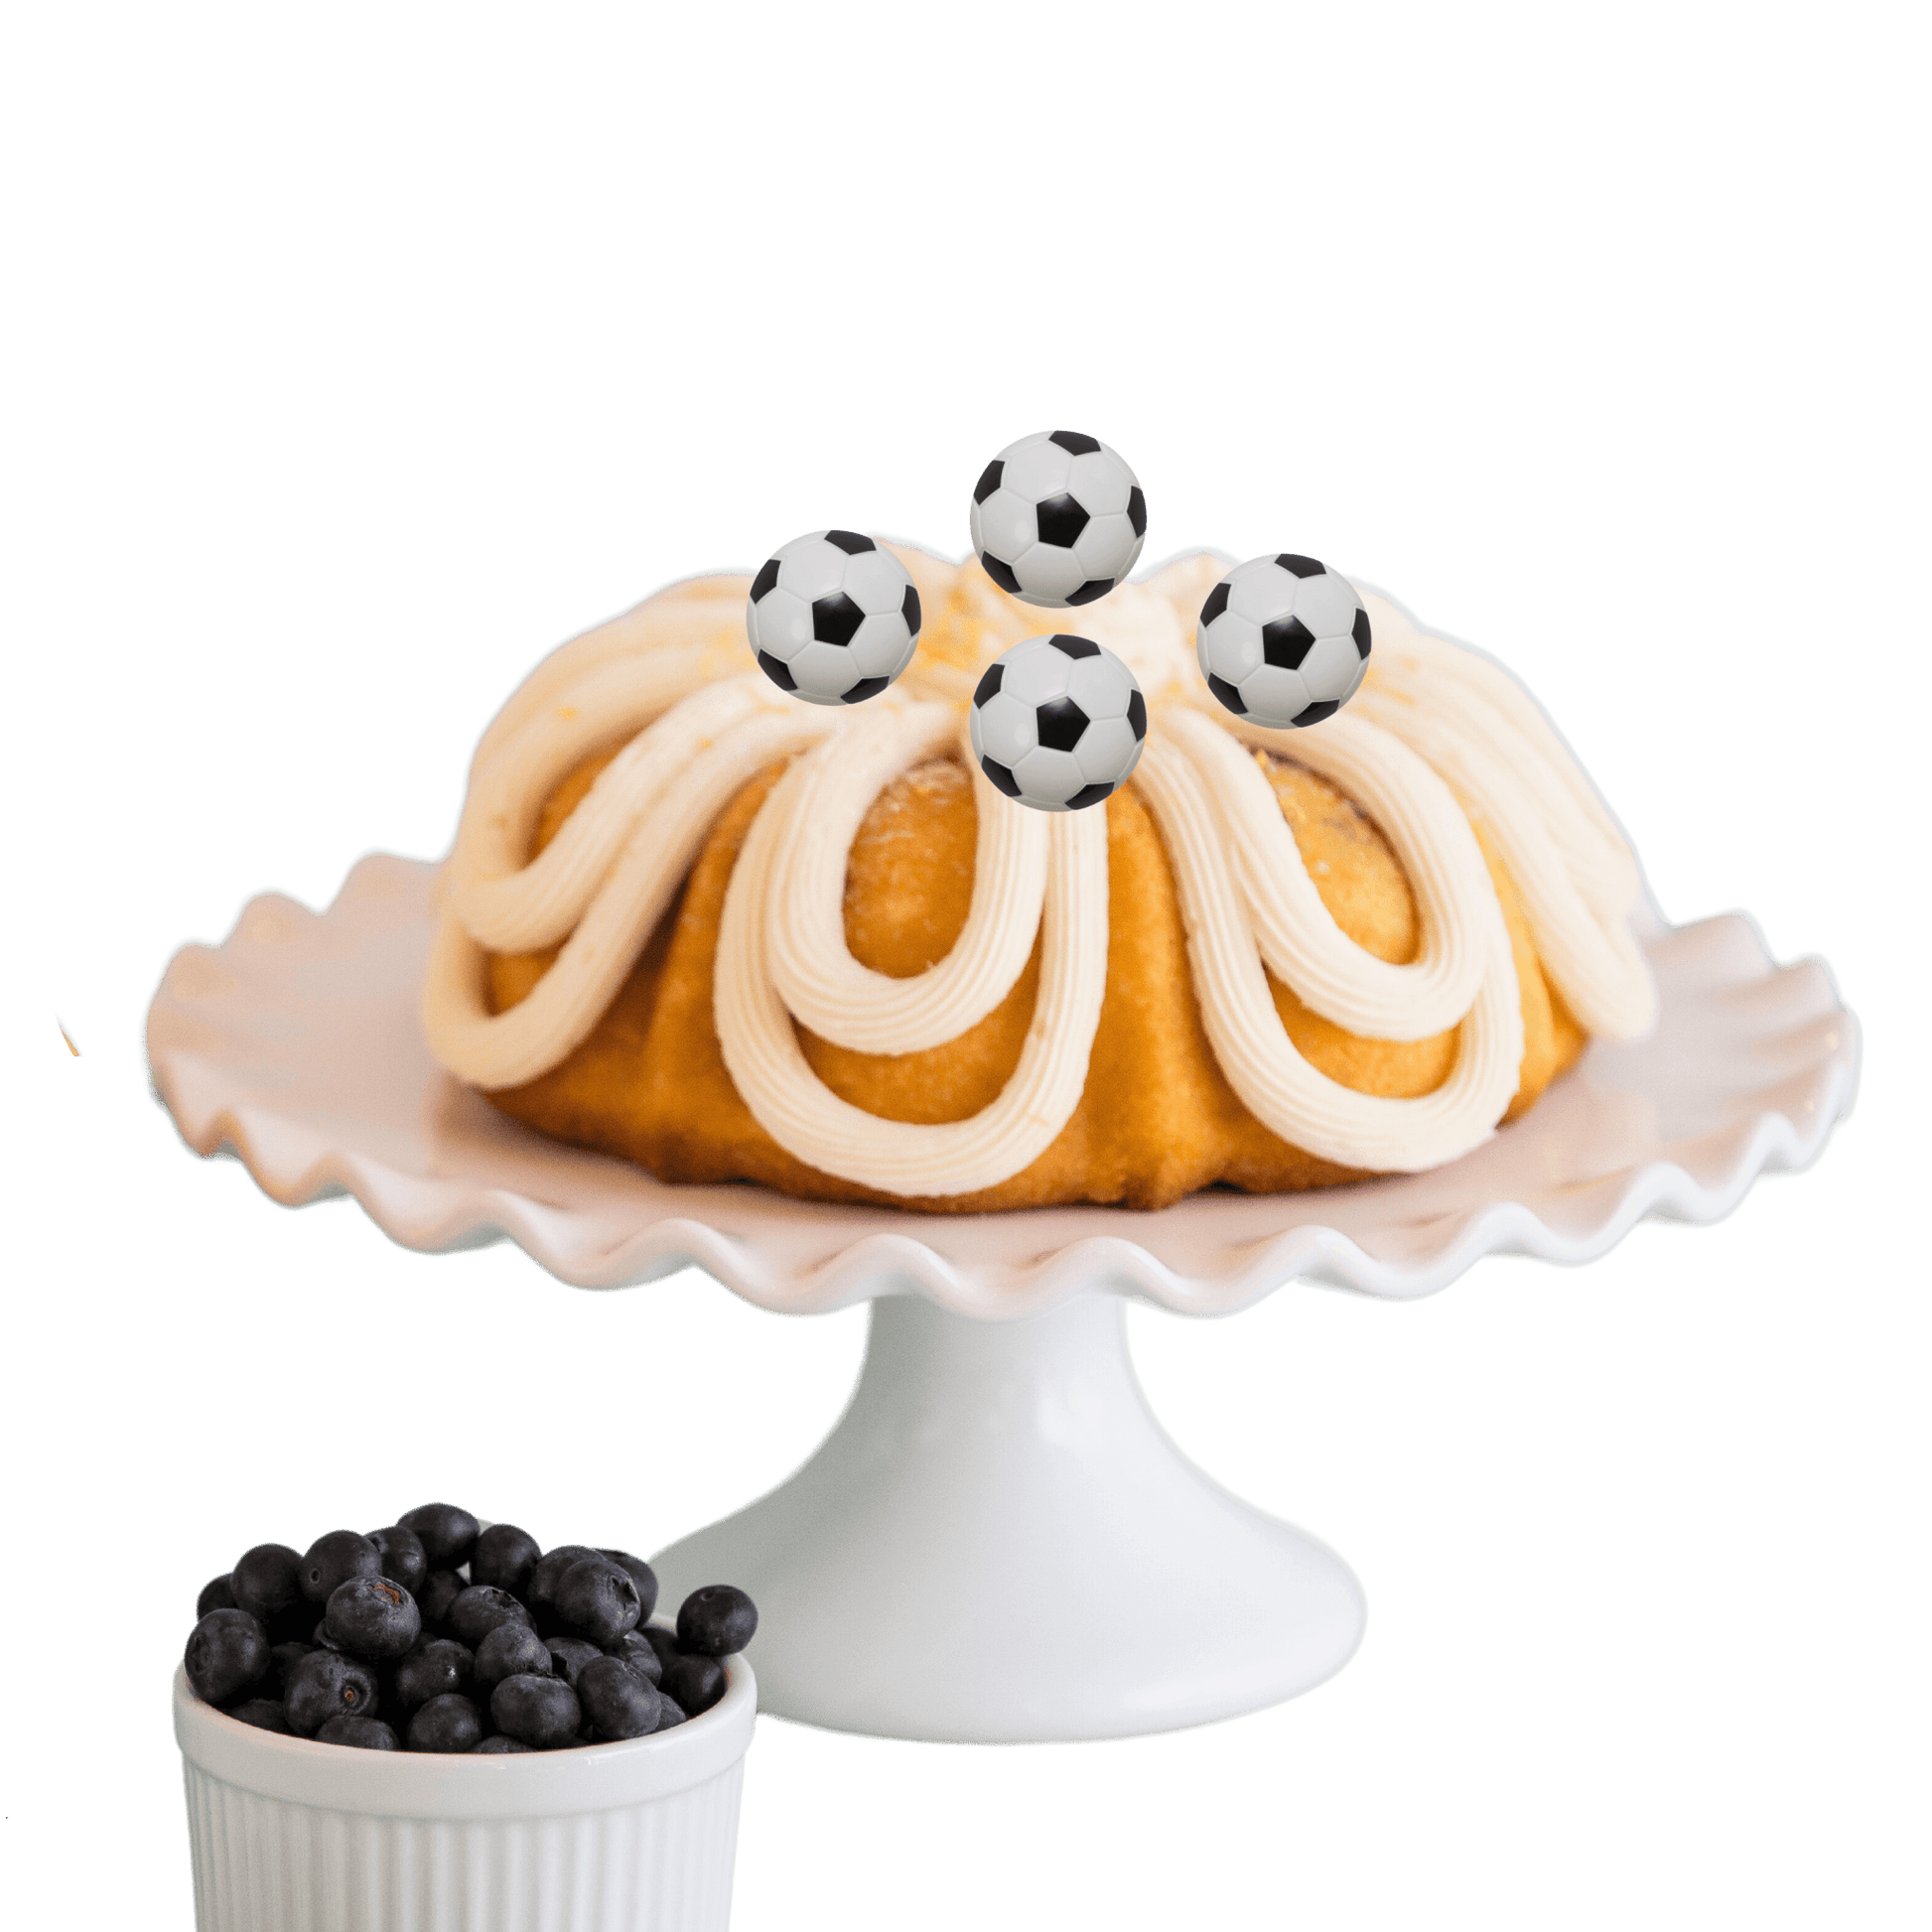 Lemon Blueberry Soccer Bundt Cake - Bundt Cakes